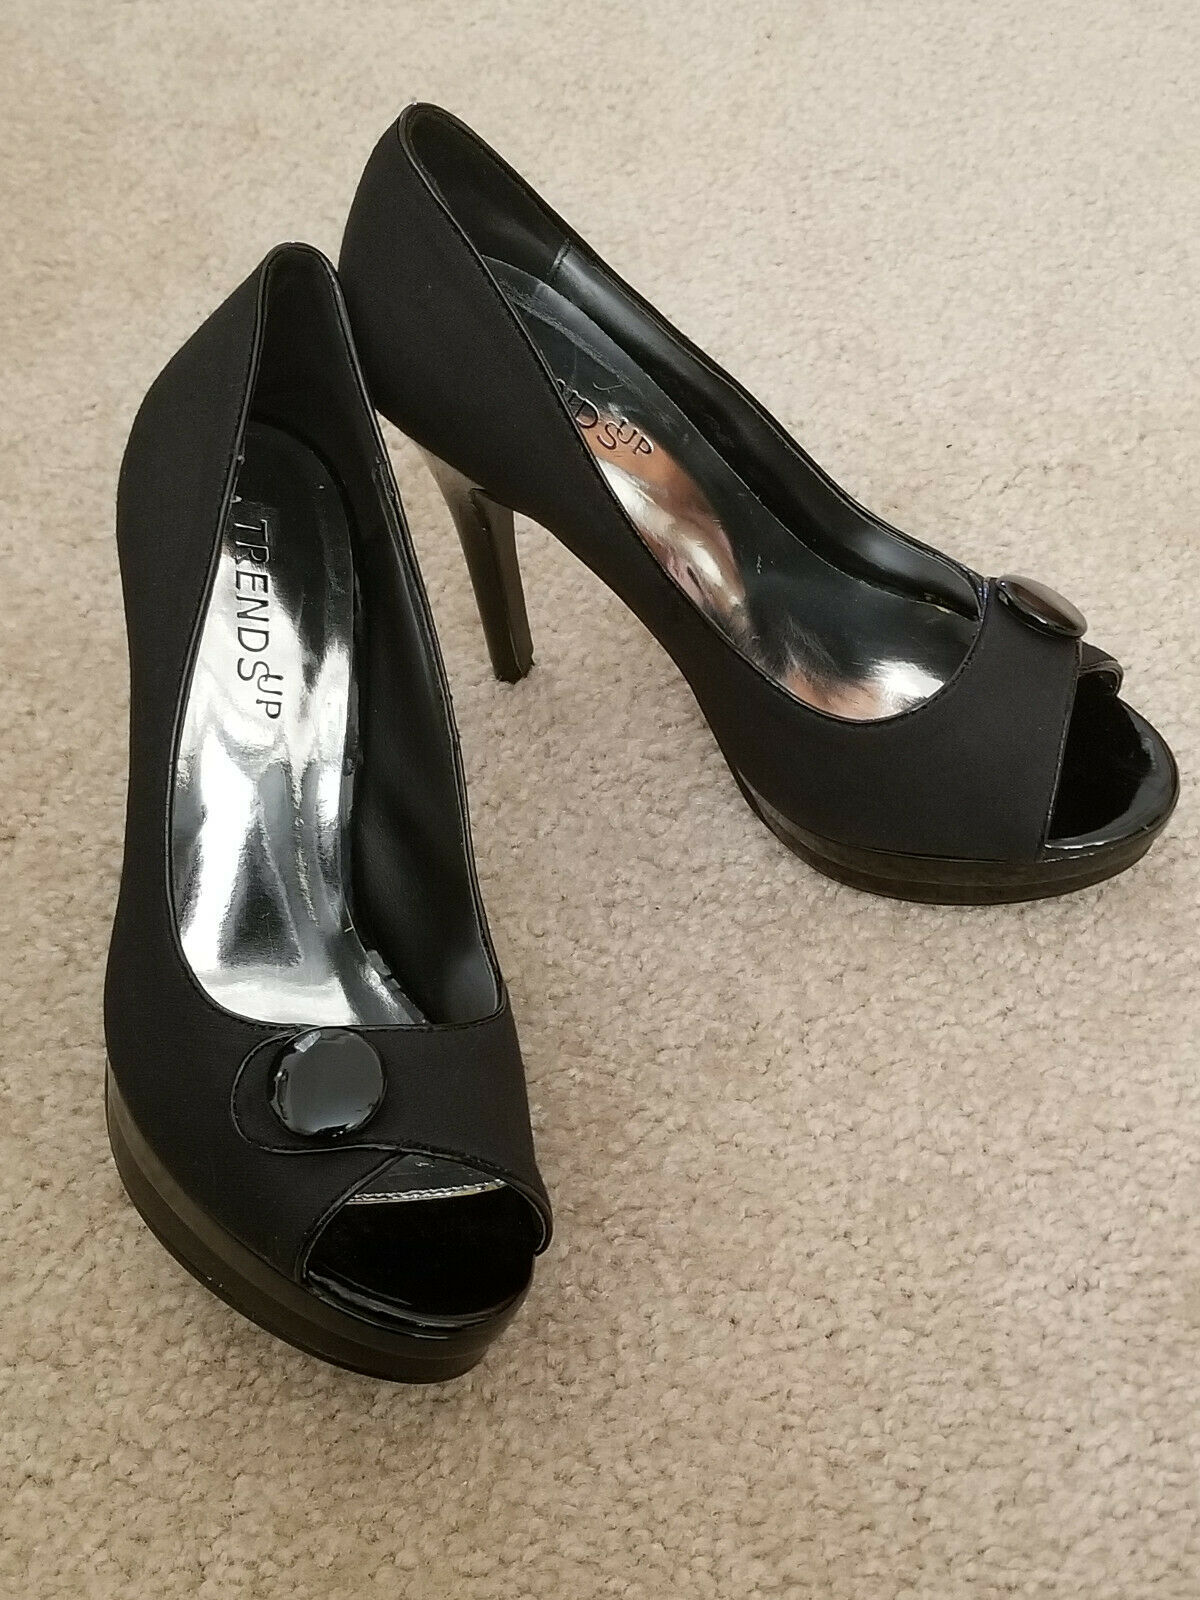 Sexy Black Women's Platform High Heel Shoes 4.5" Heel Size 6